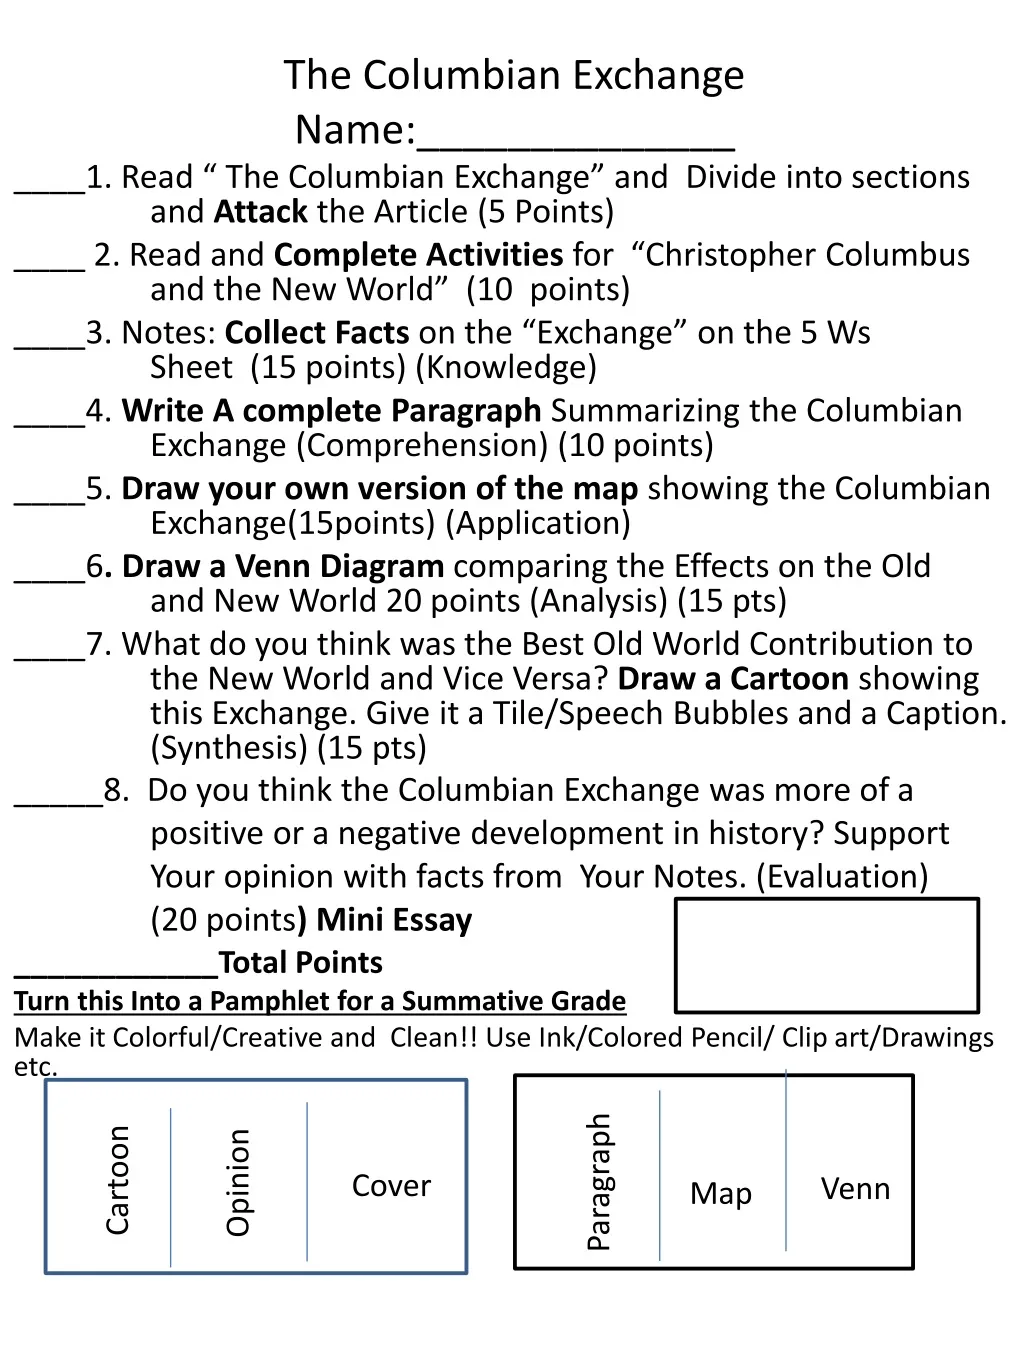 the columbian exchange name